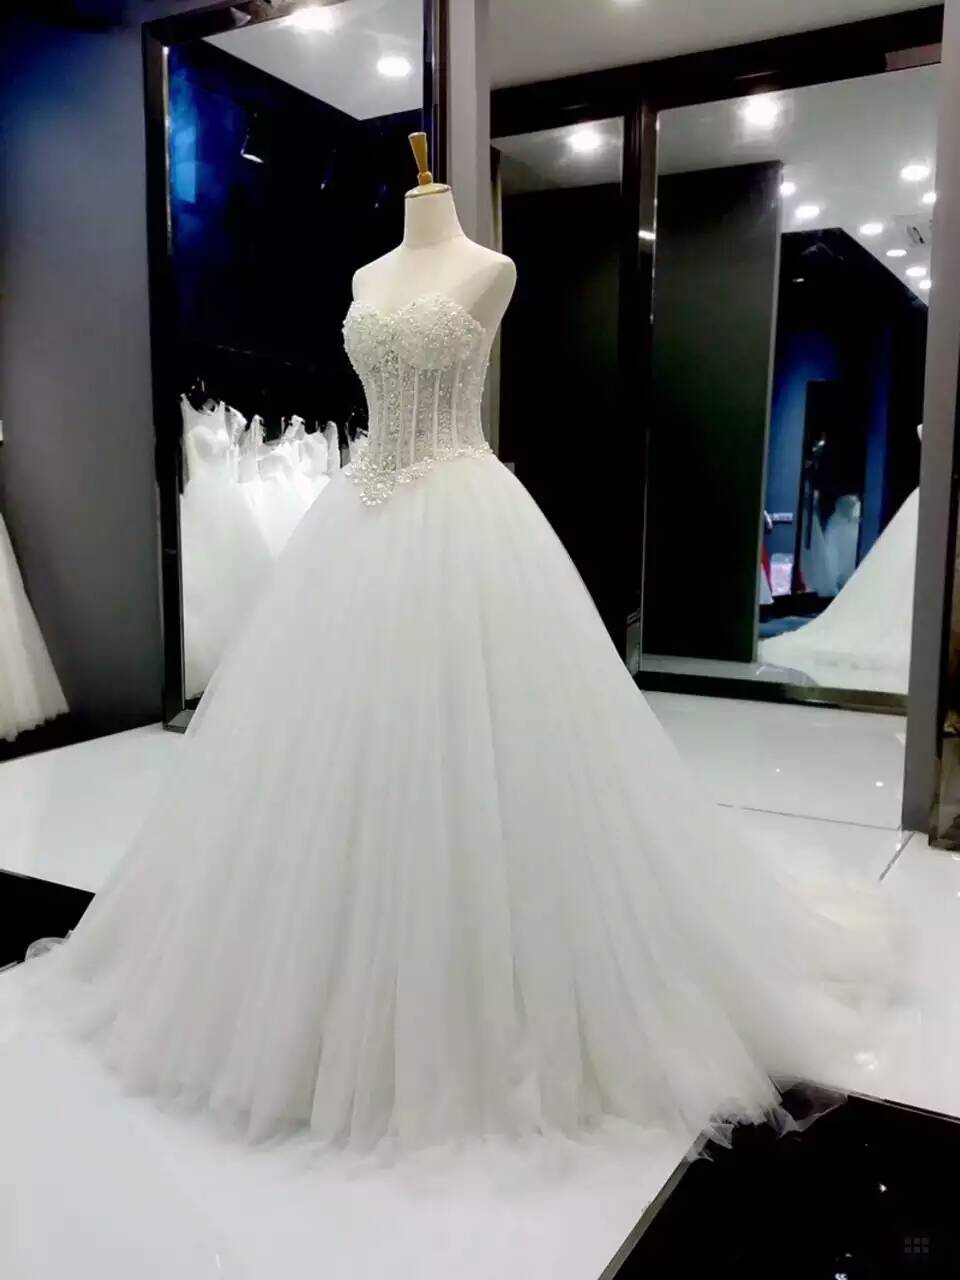 Sleeveless Illusion Corset Bodice Wedding Dress With Beading